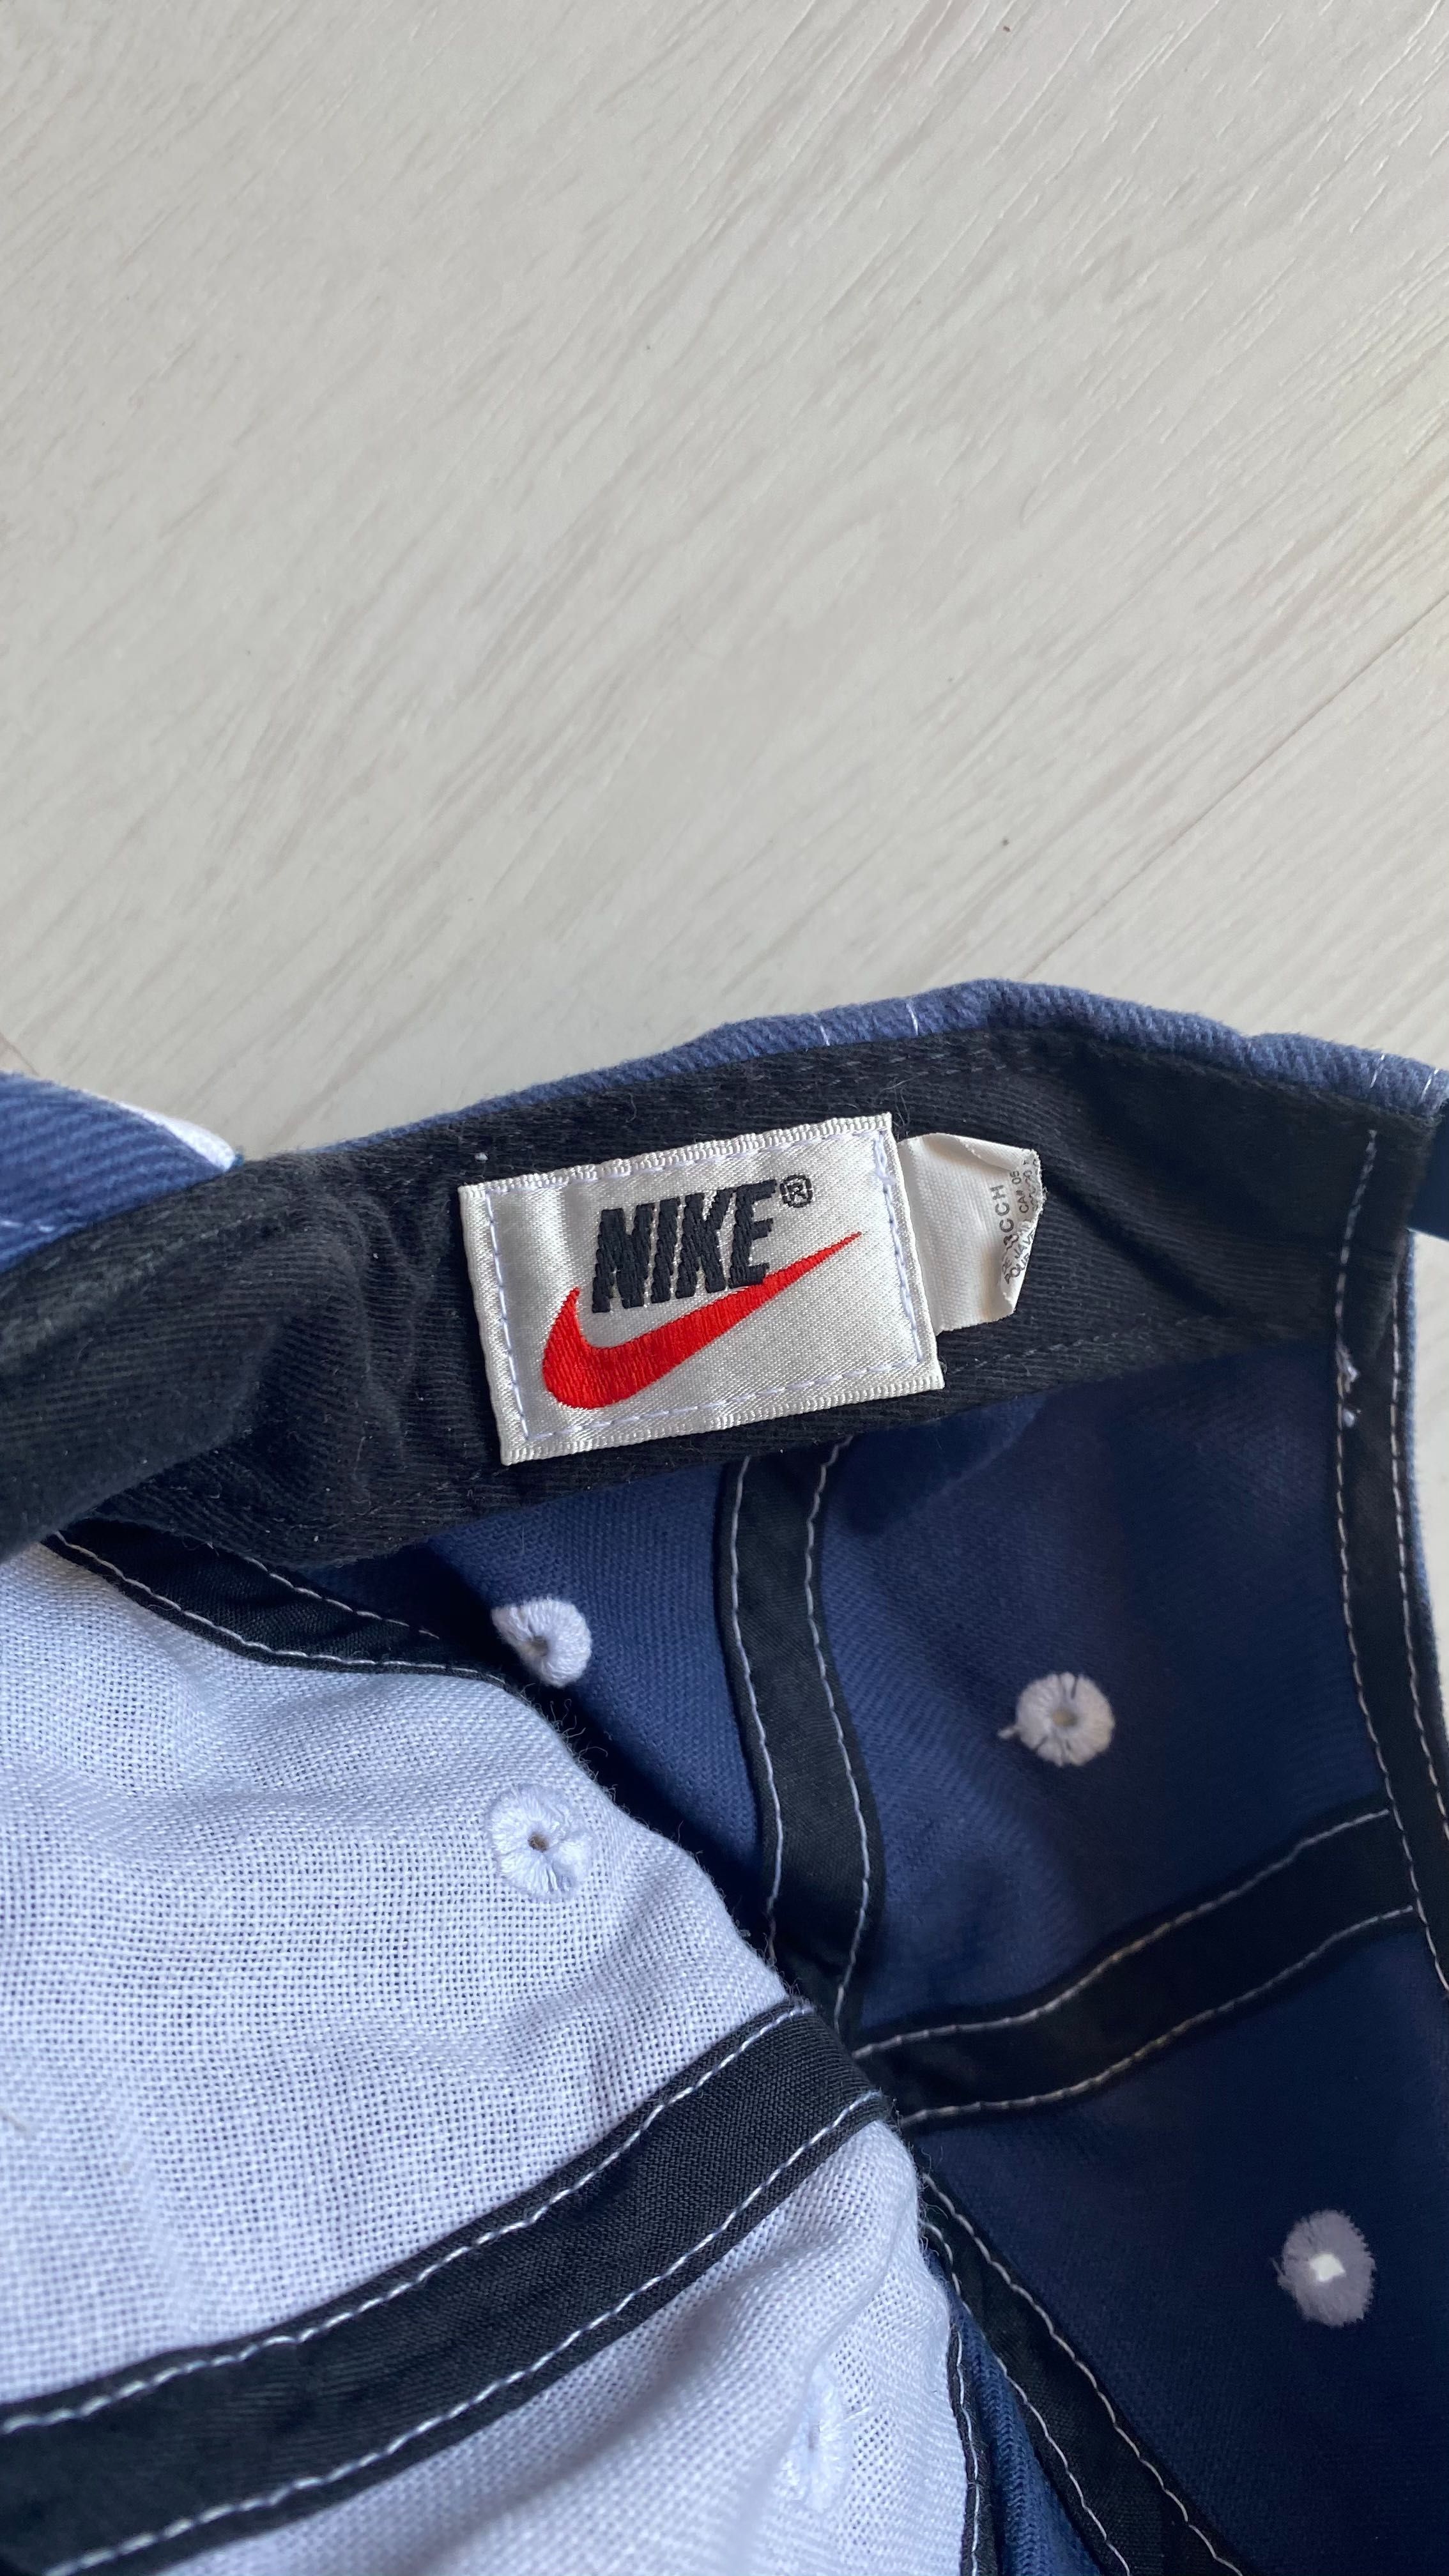 Șapcă Nike albastră